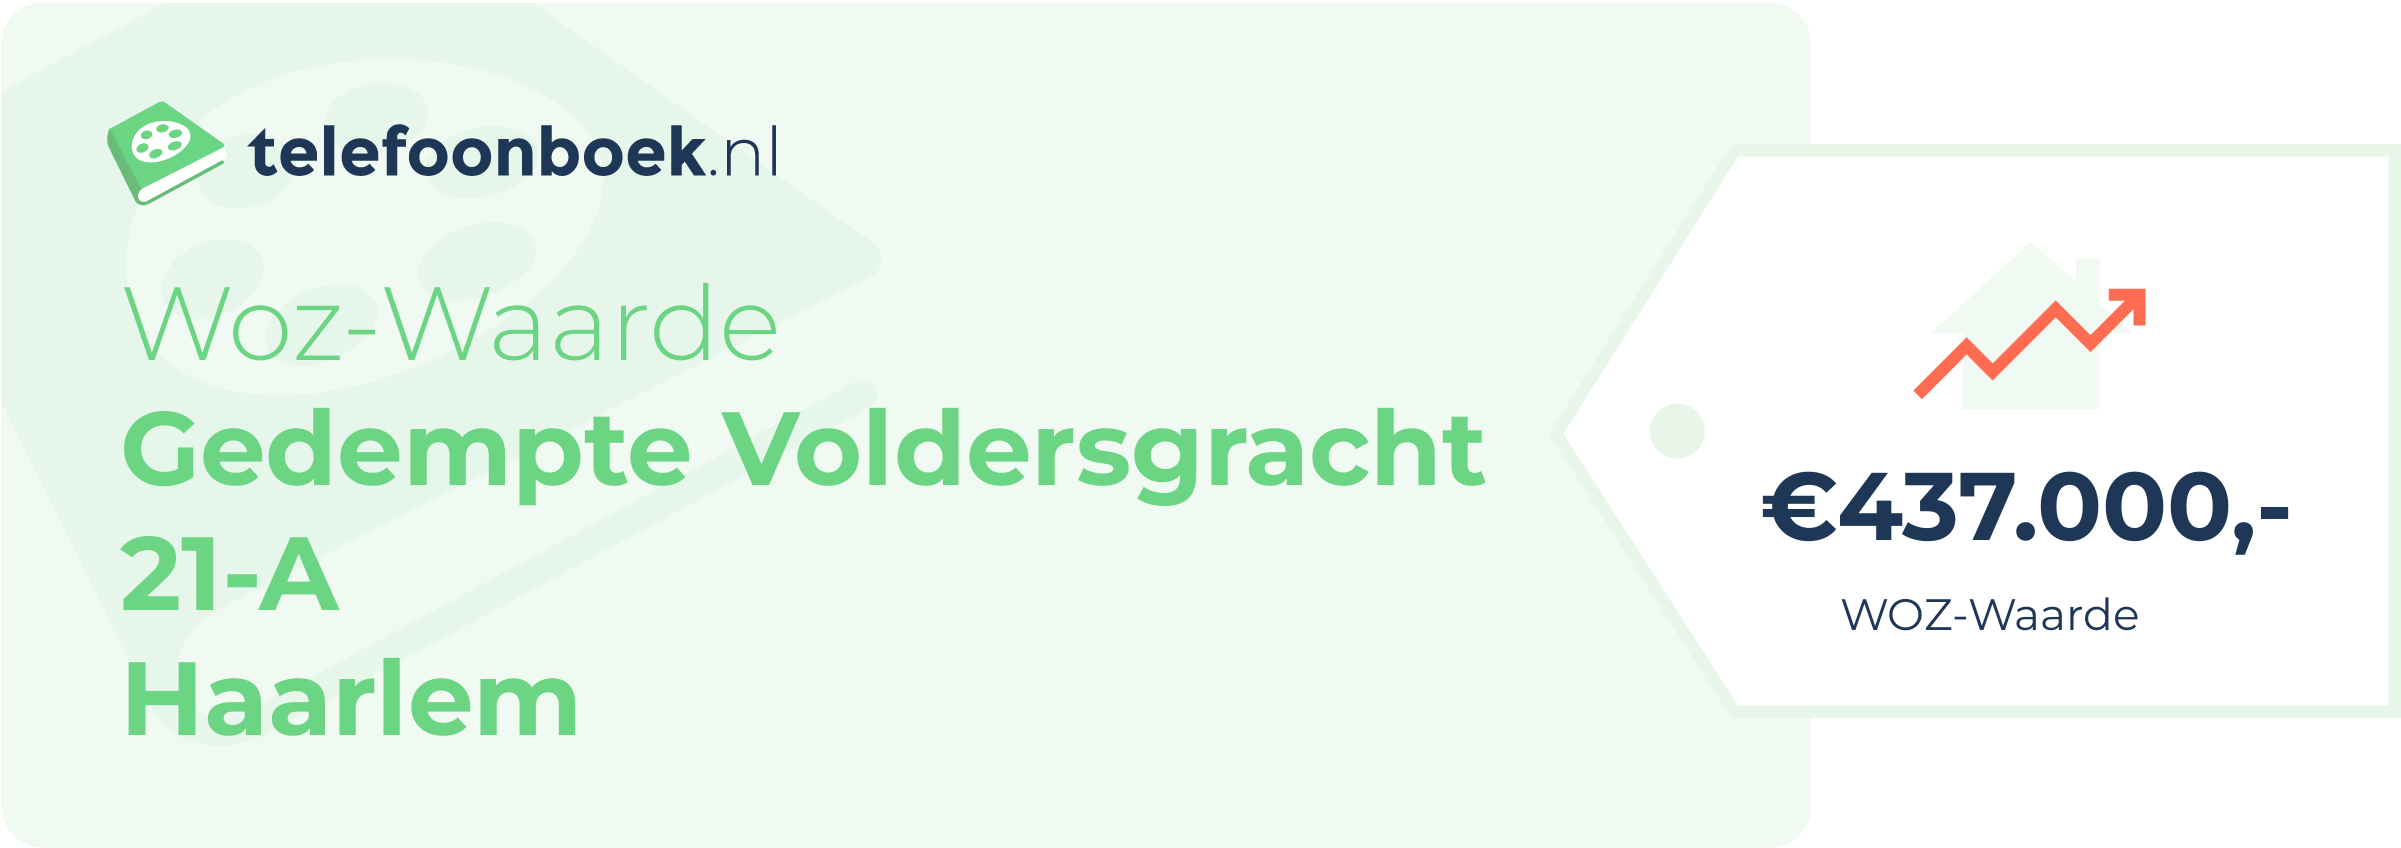 WOZ-waarde Gedempte Voldersgracht 21-A Haarlem